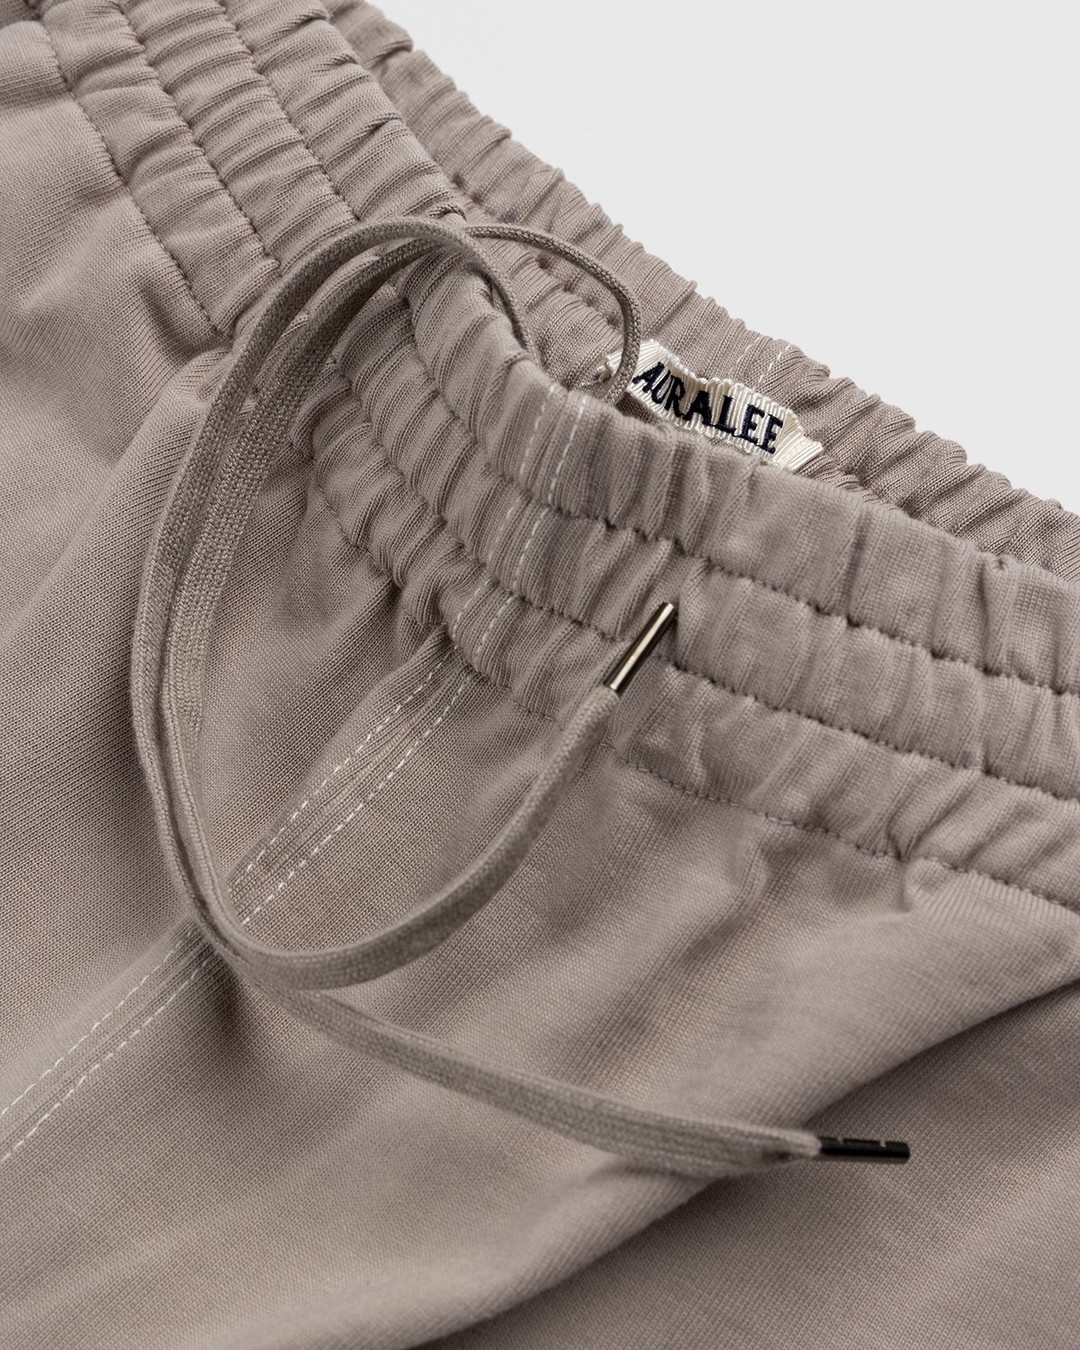 Auralee – High Density Cotton Jersey Shorts Grey Beige - Shorts - Beige - Image 4